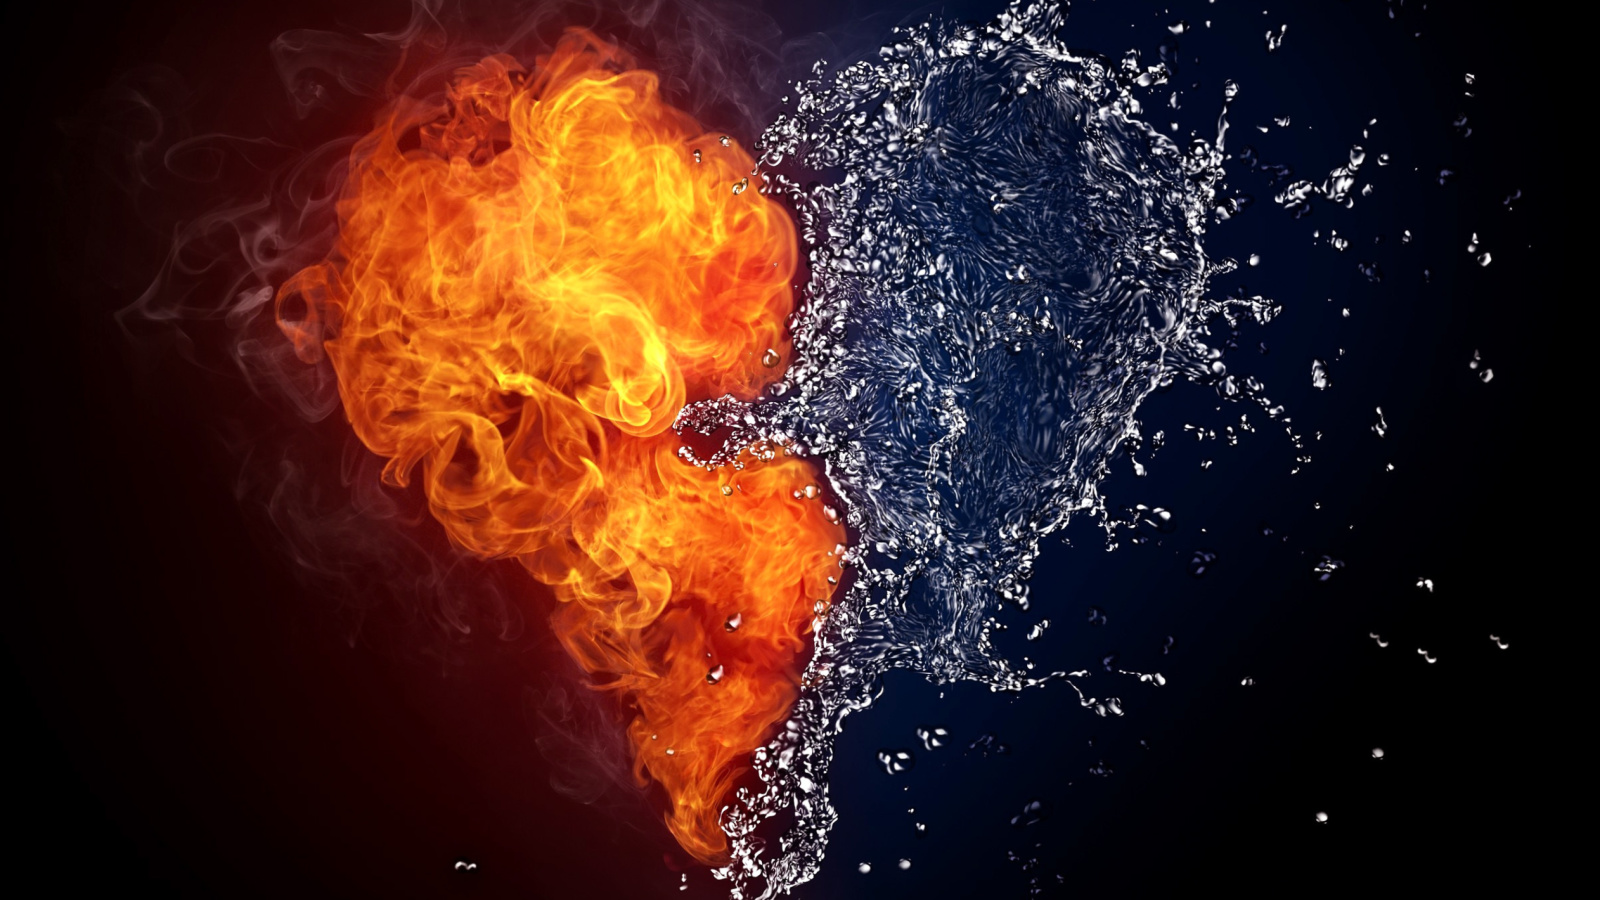 Обои Water and Fire Heart 1600x900